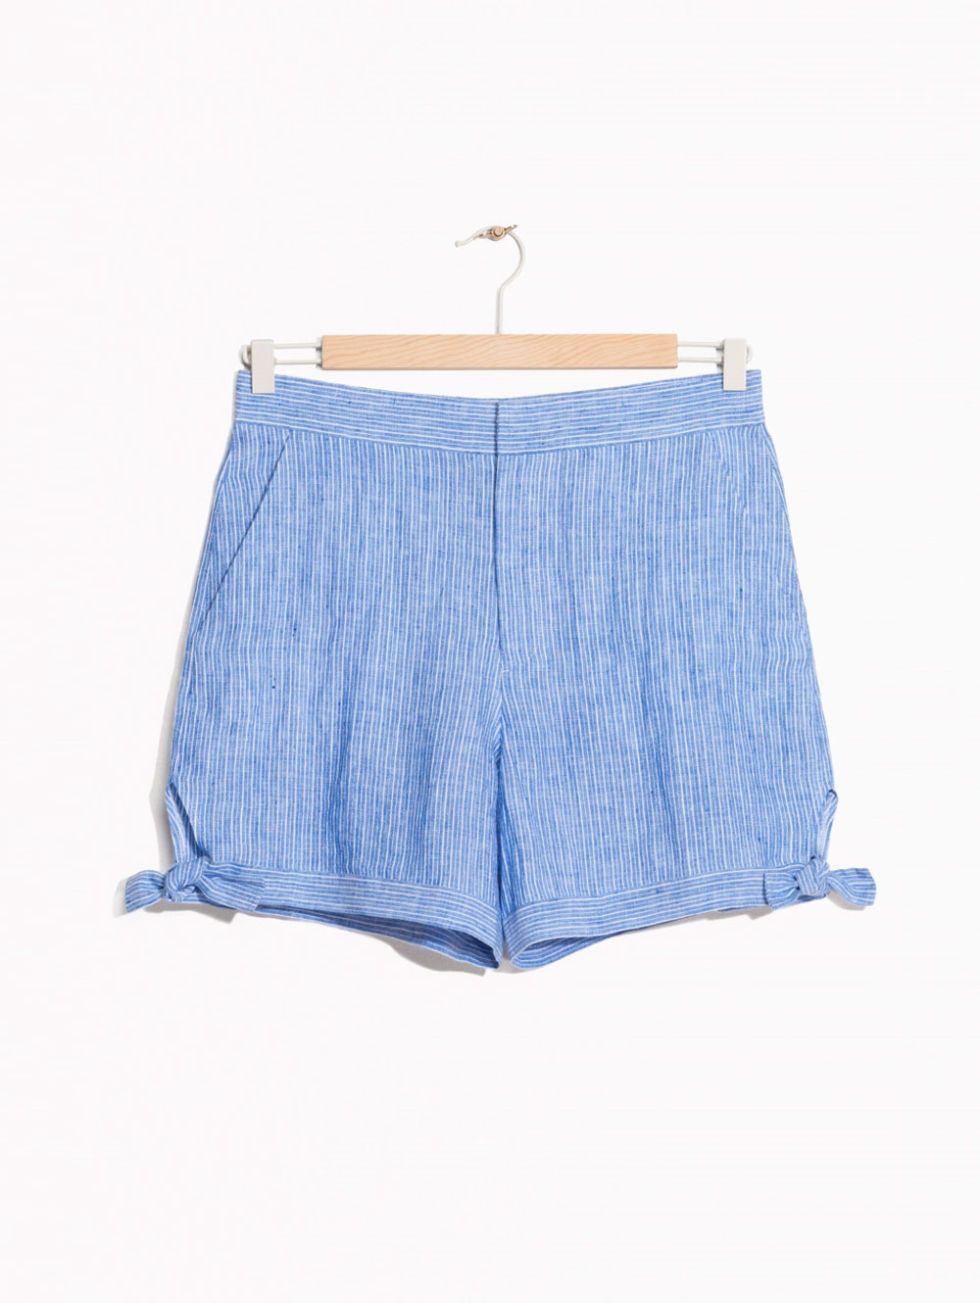 Blue, Product, Denim, Textile, Shorts, Electric blue, Azure, Aqua, Majorelle blue, Active shorts, 